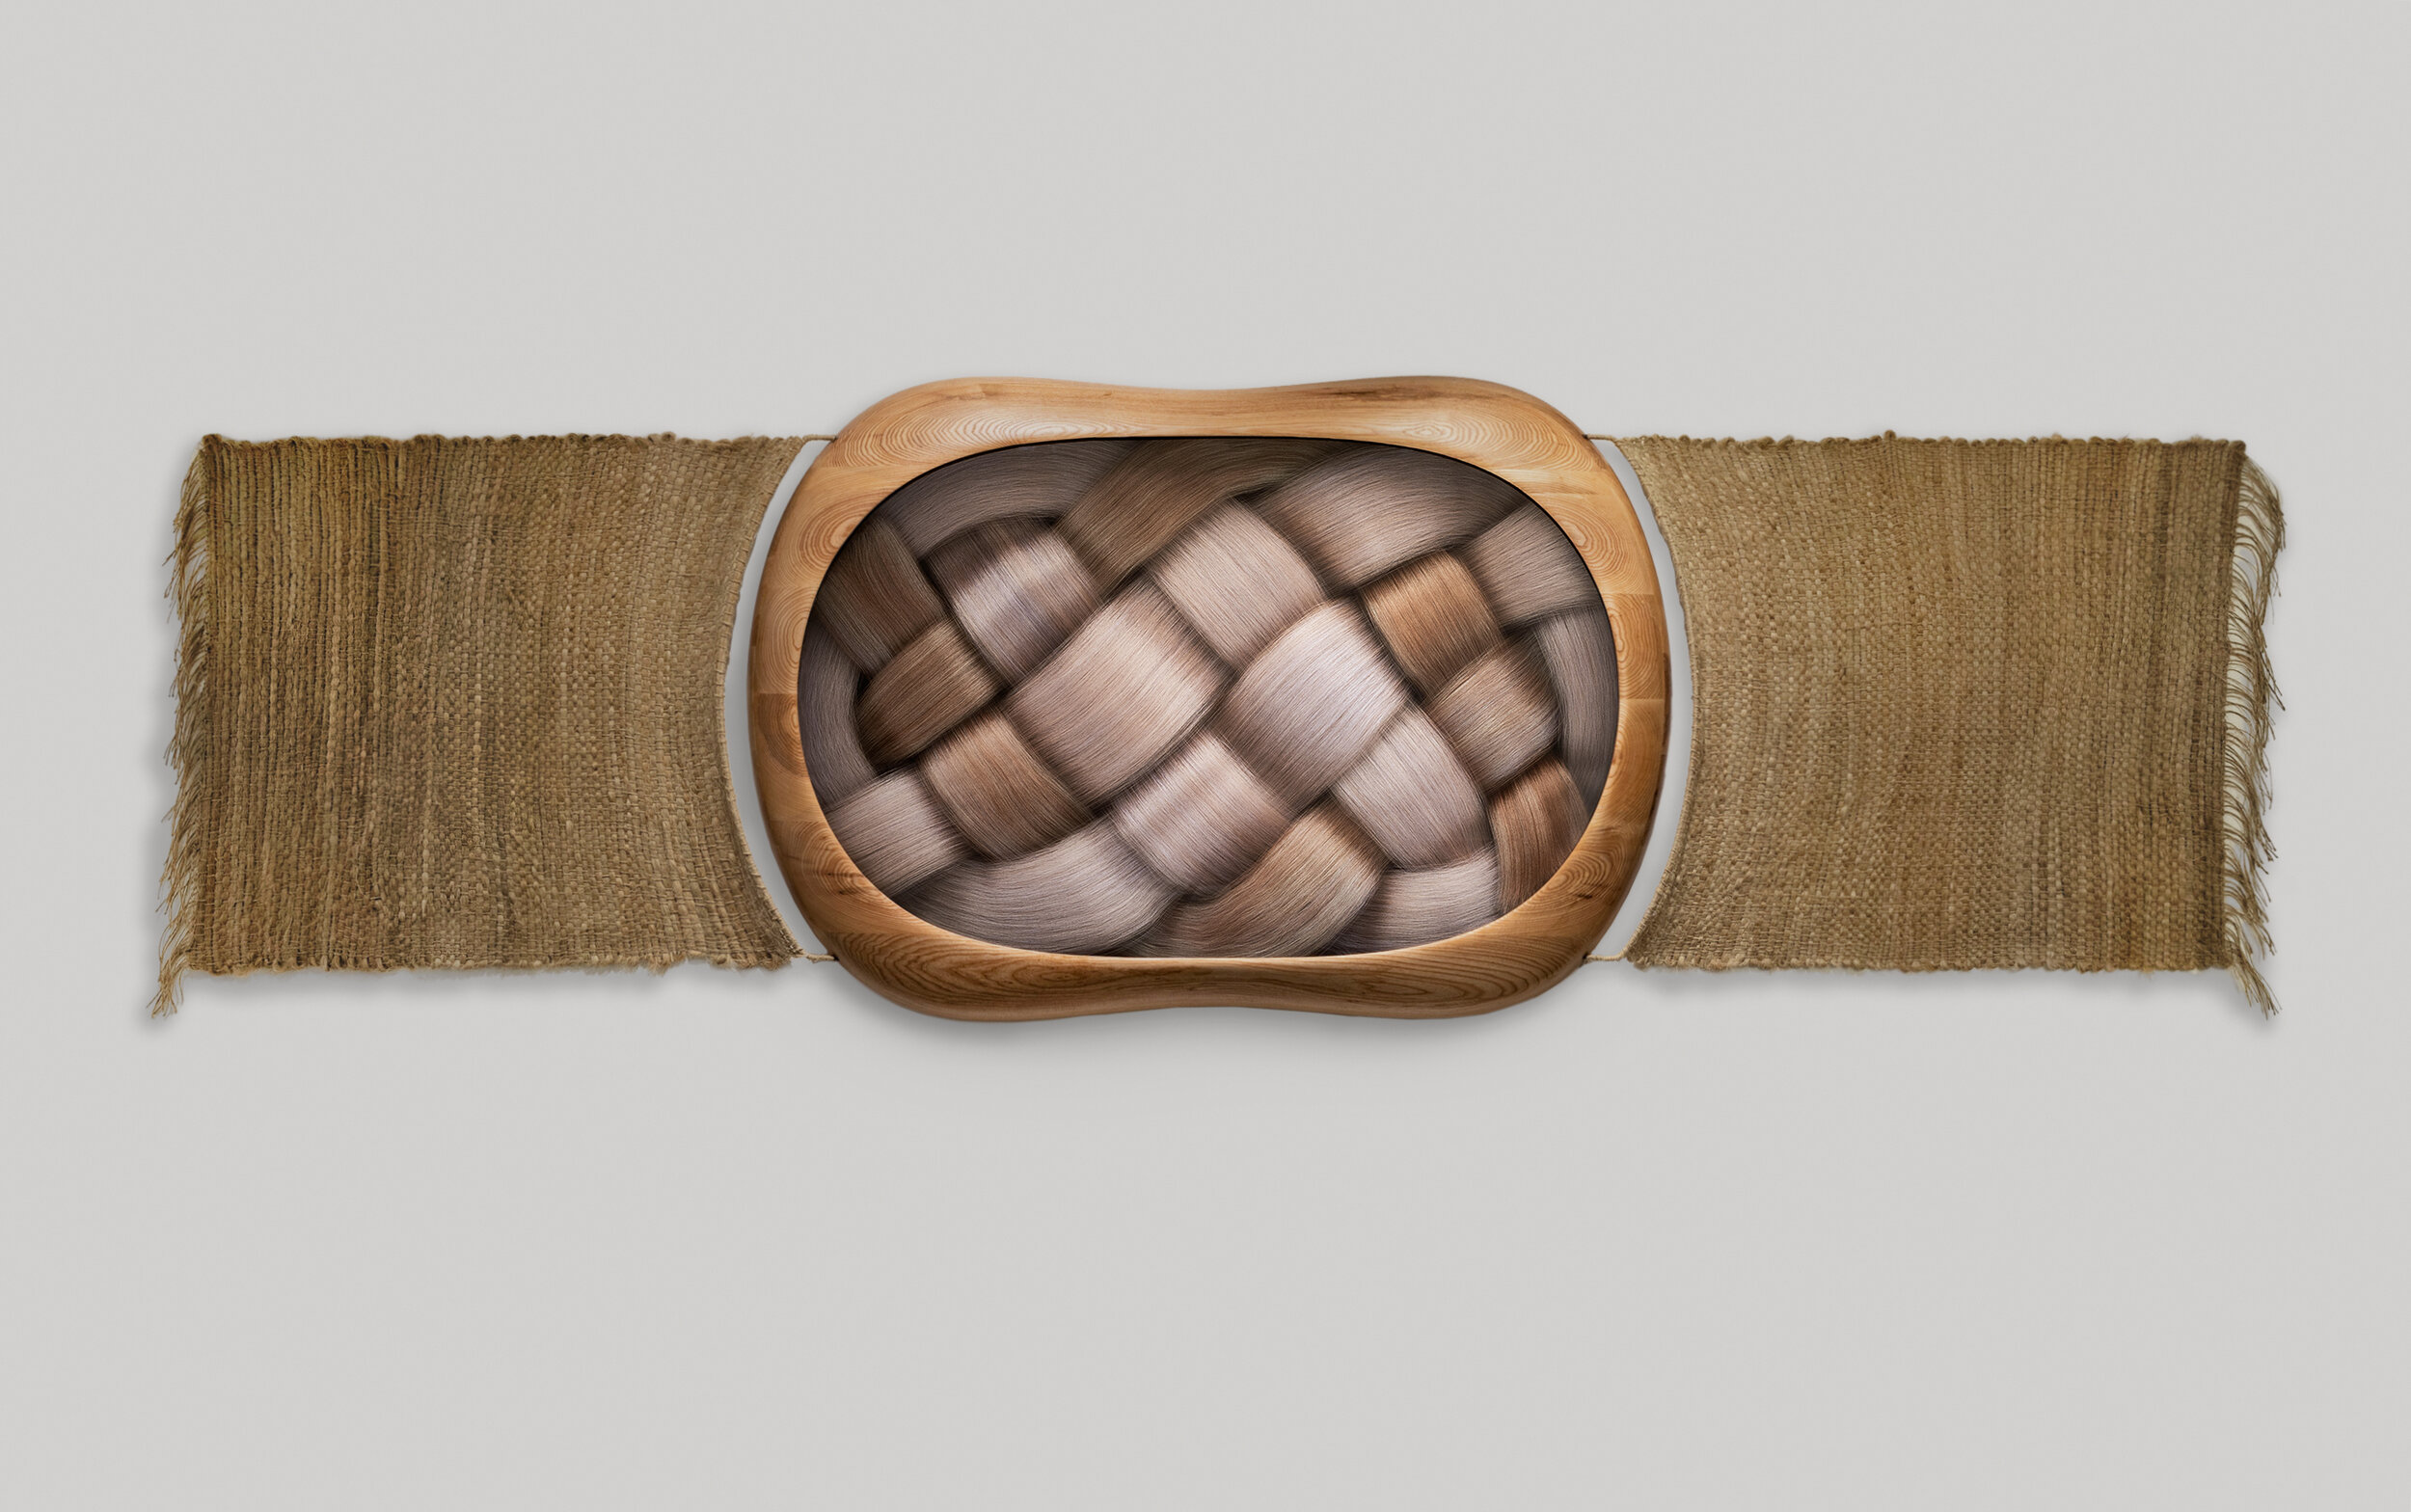   Untitled (Bracelet)   2019, digital sculpture, inkjet printed on paper in artist’s frame (oak wood, linen), 95 × 350 × 9 cm 